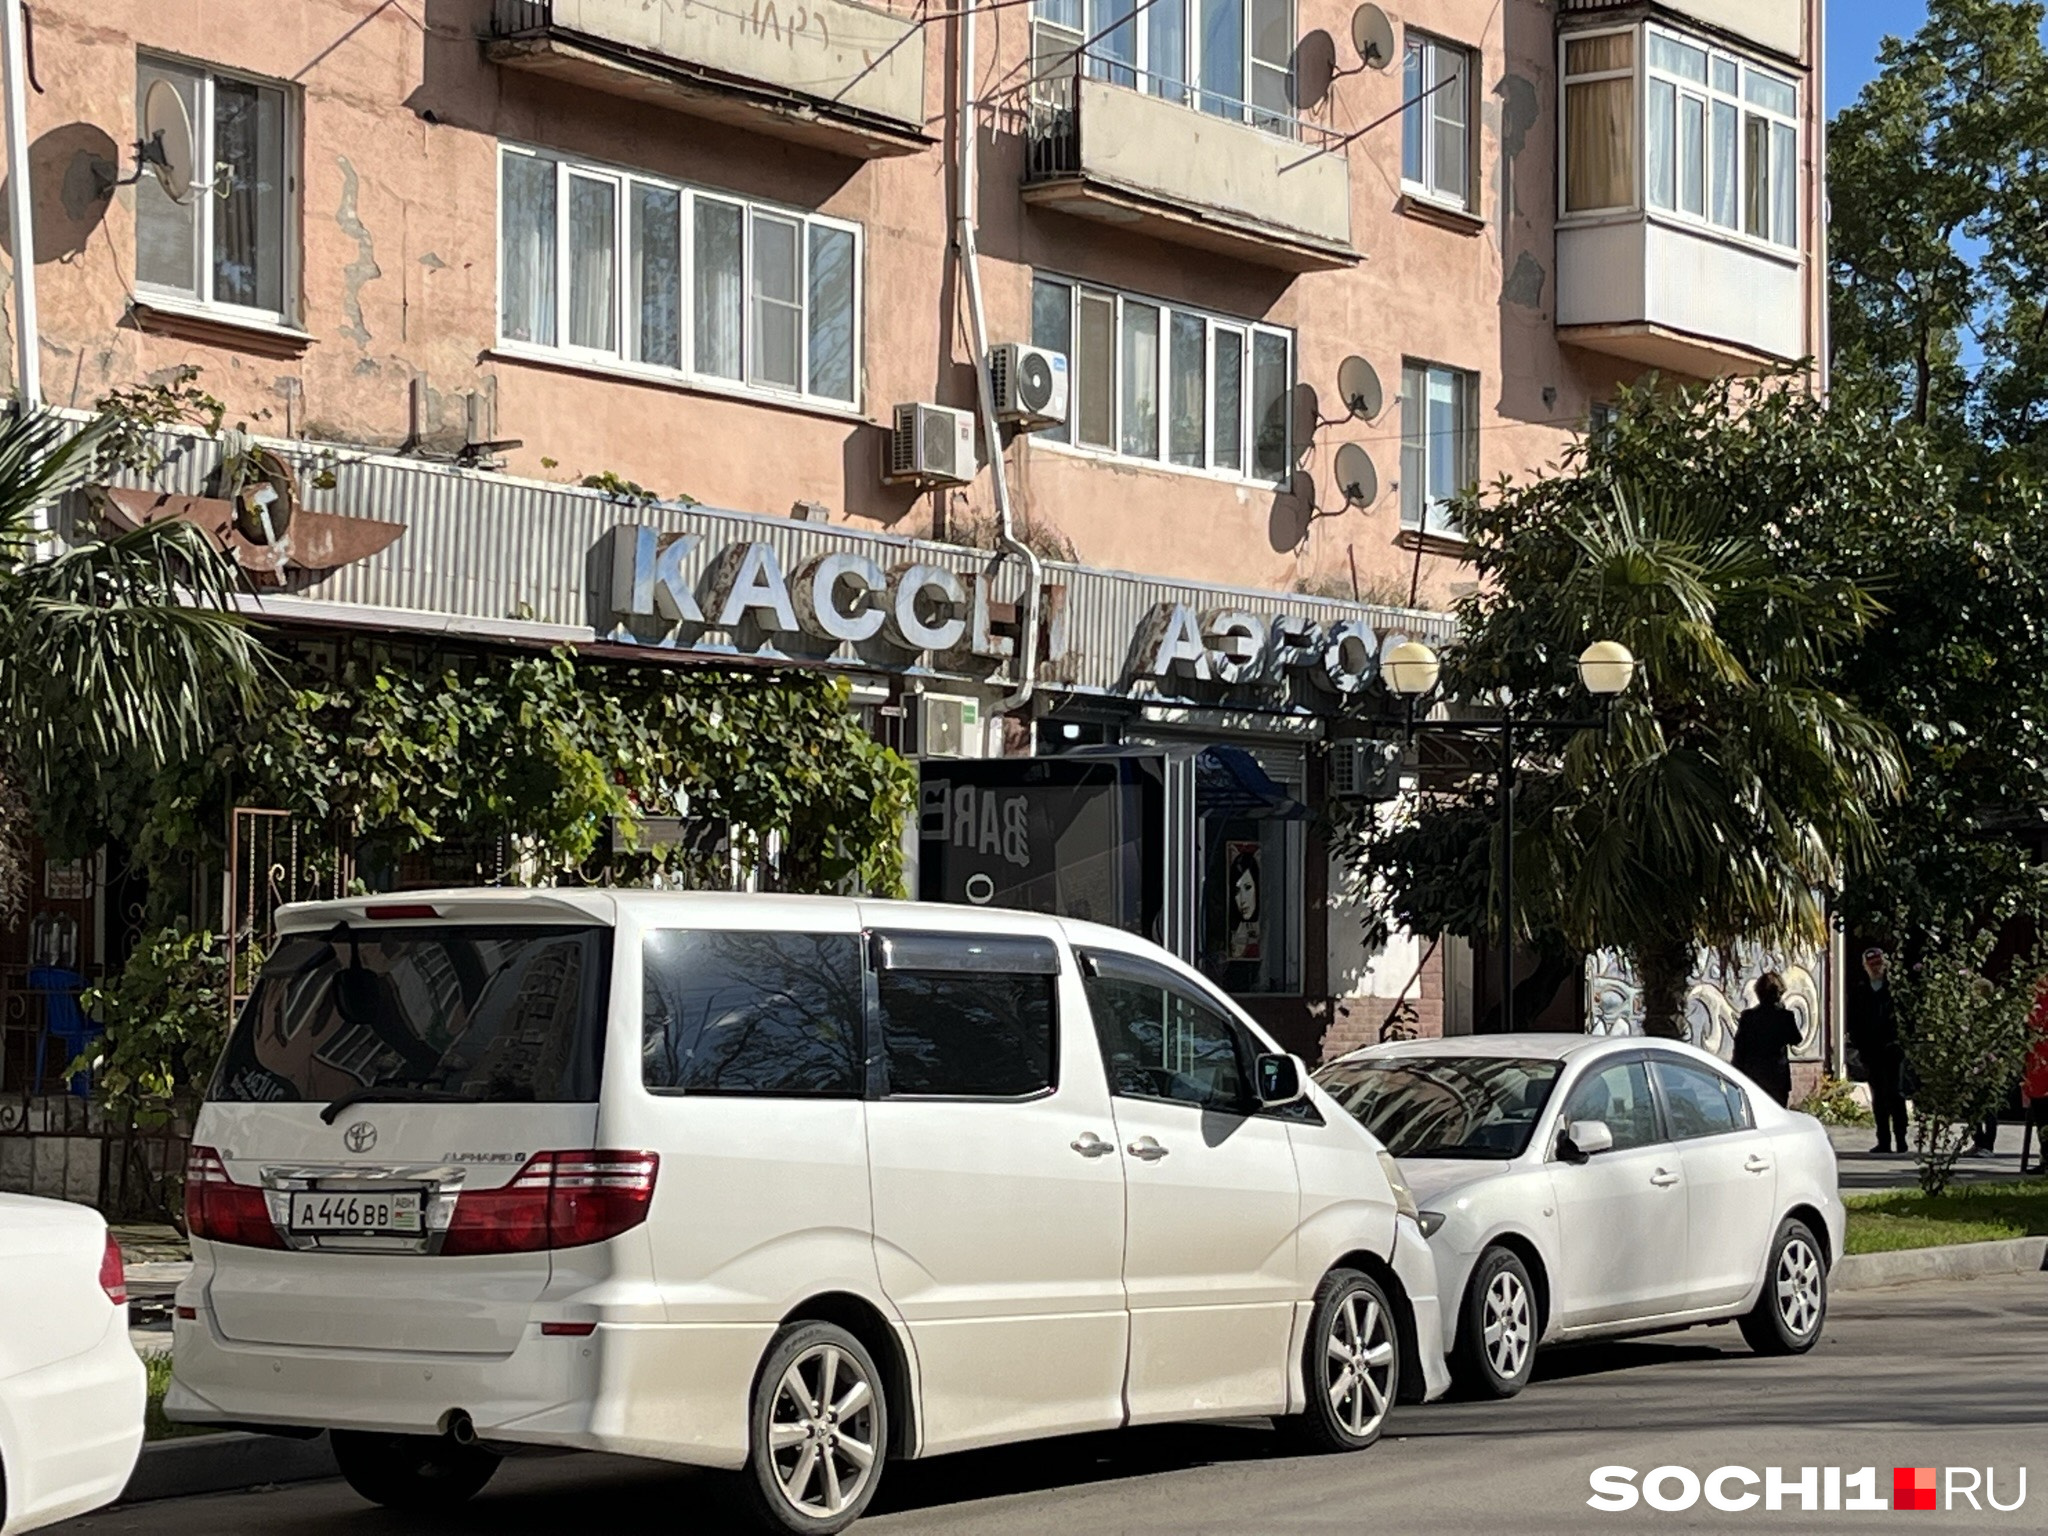 Если вы приехали в Абхазию на своем автомобиле, то можете объехать ее всю за несколько дней